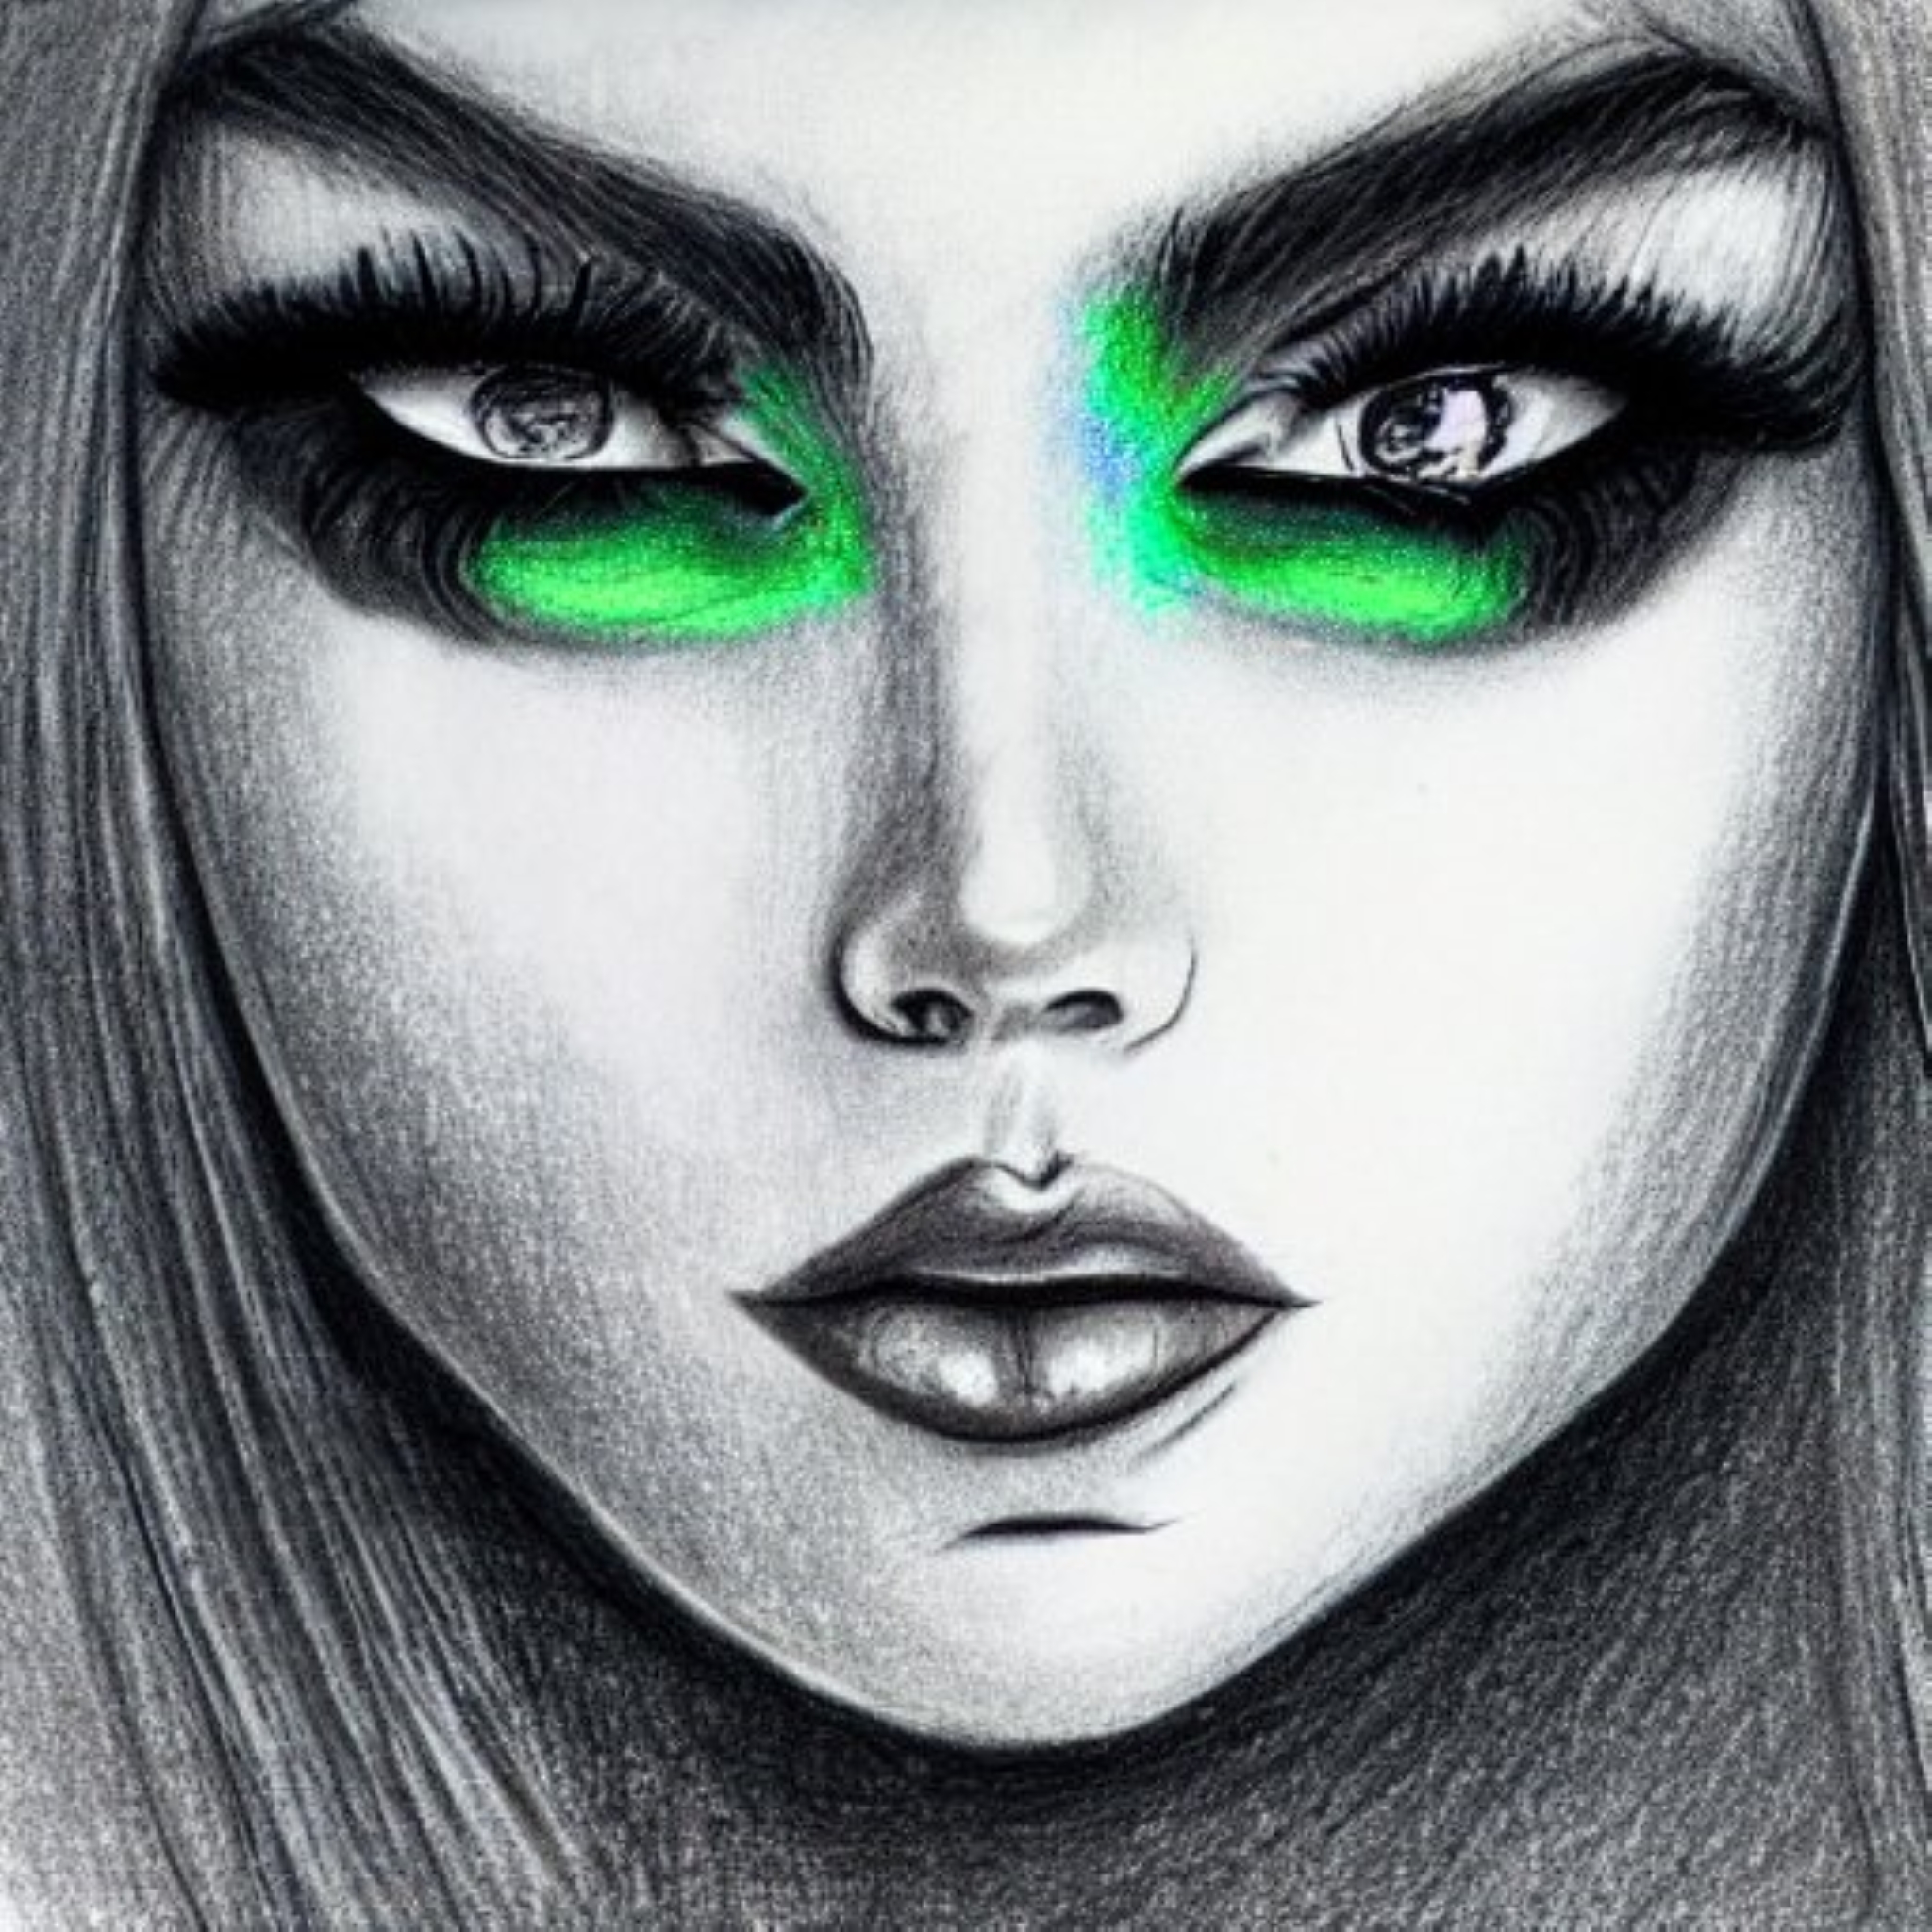 ART GALLERY - Art Drawing of a Girl Green Makeup